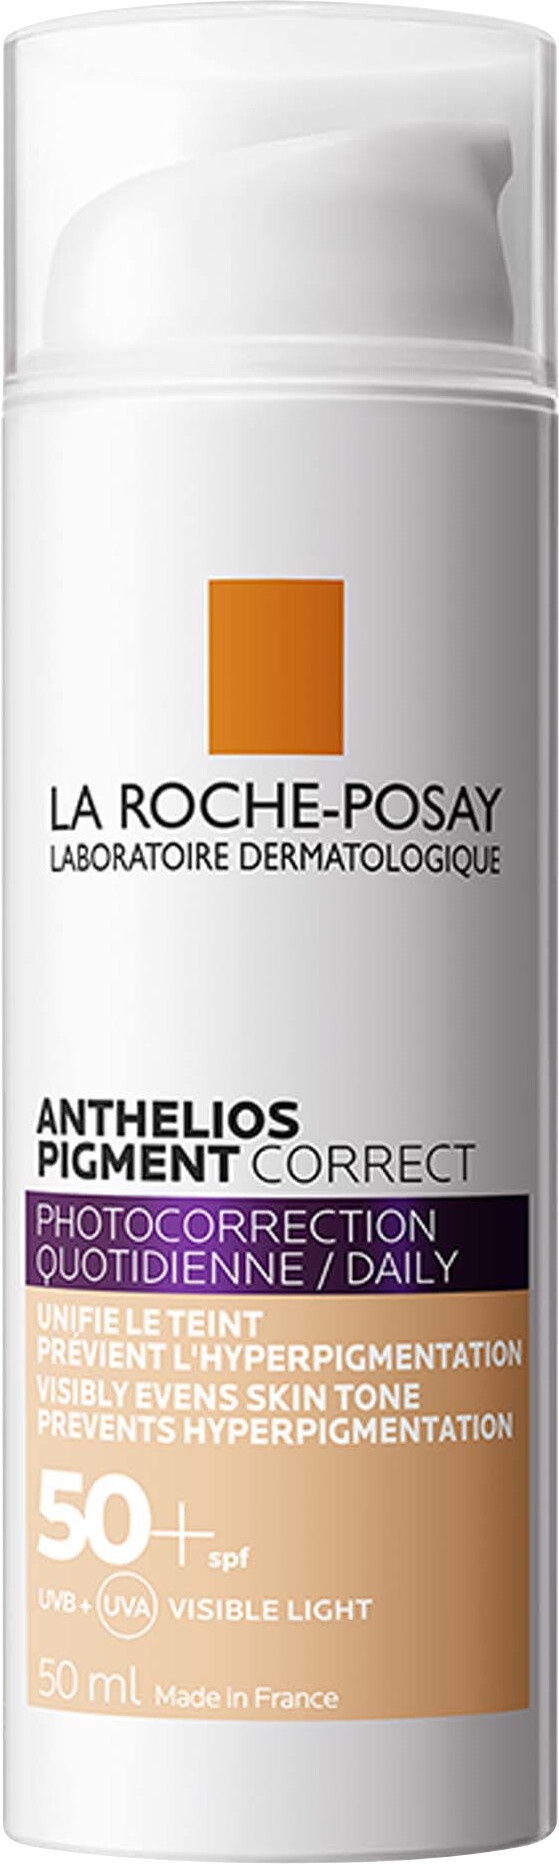 La Roche-Posay Anthelios Pigment Correct SPF50